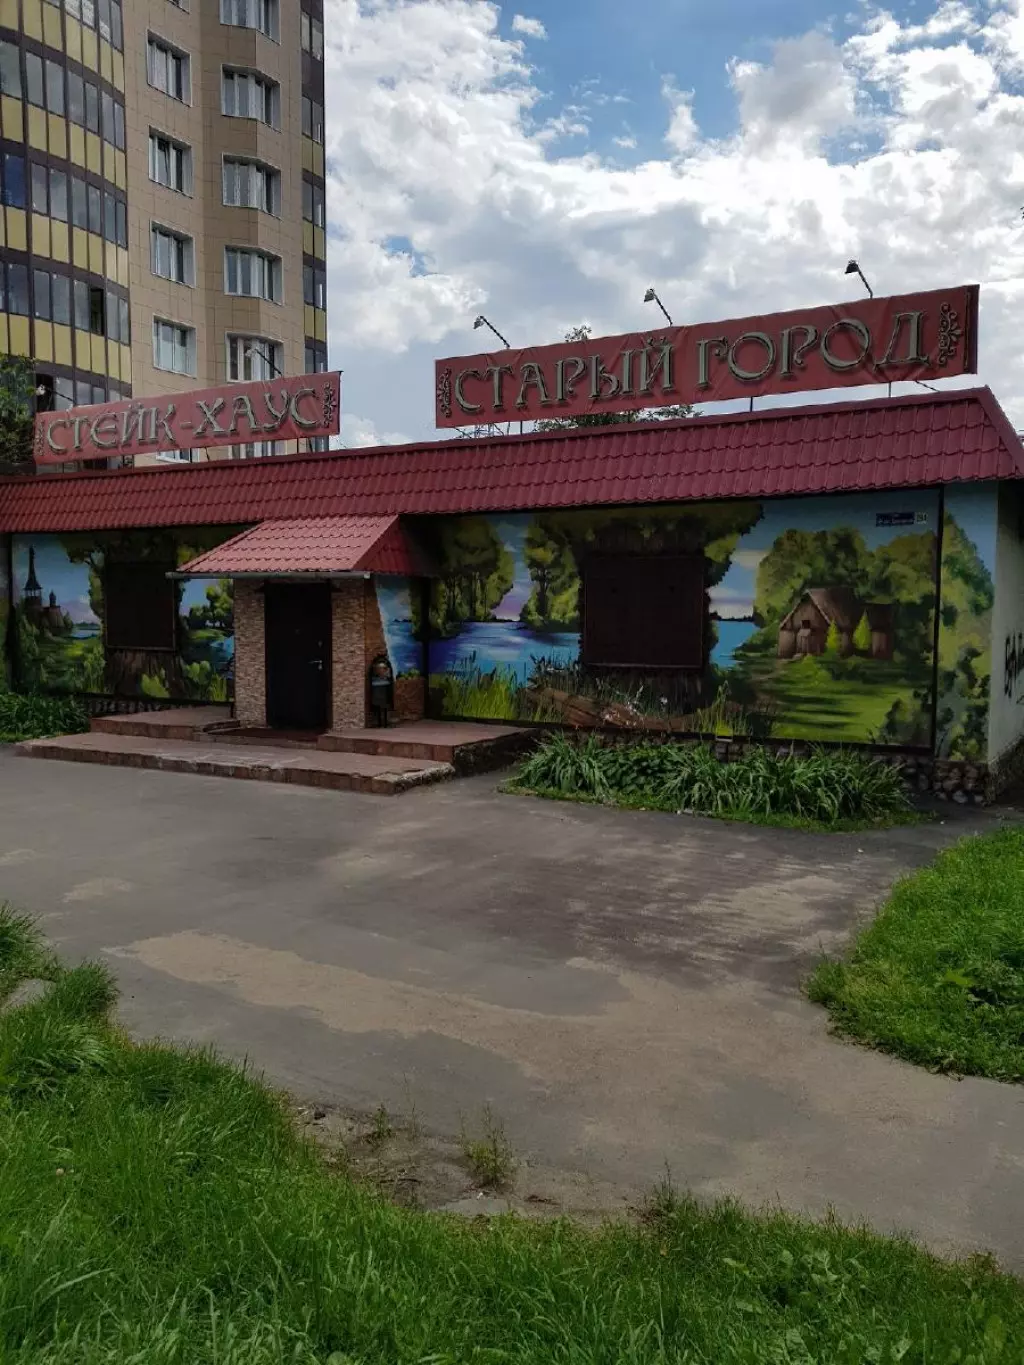 Рестораны пушкино московская область